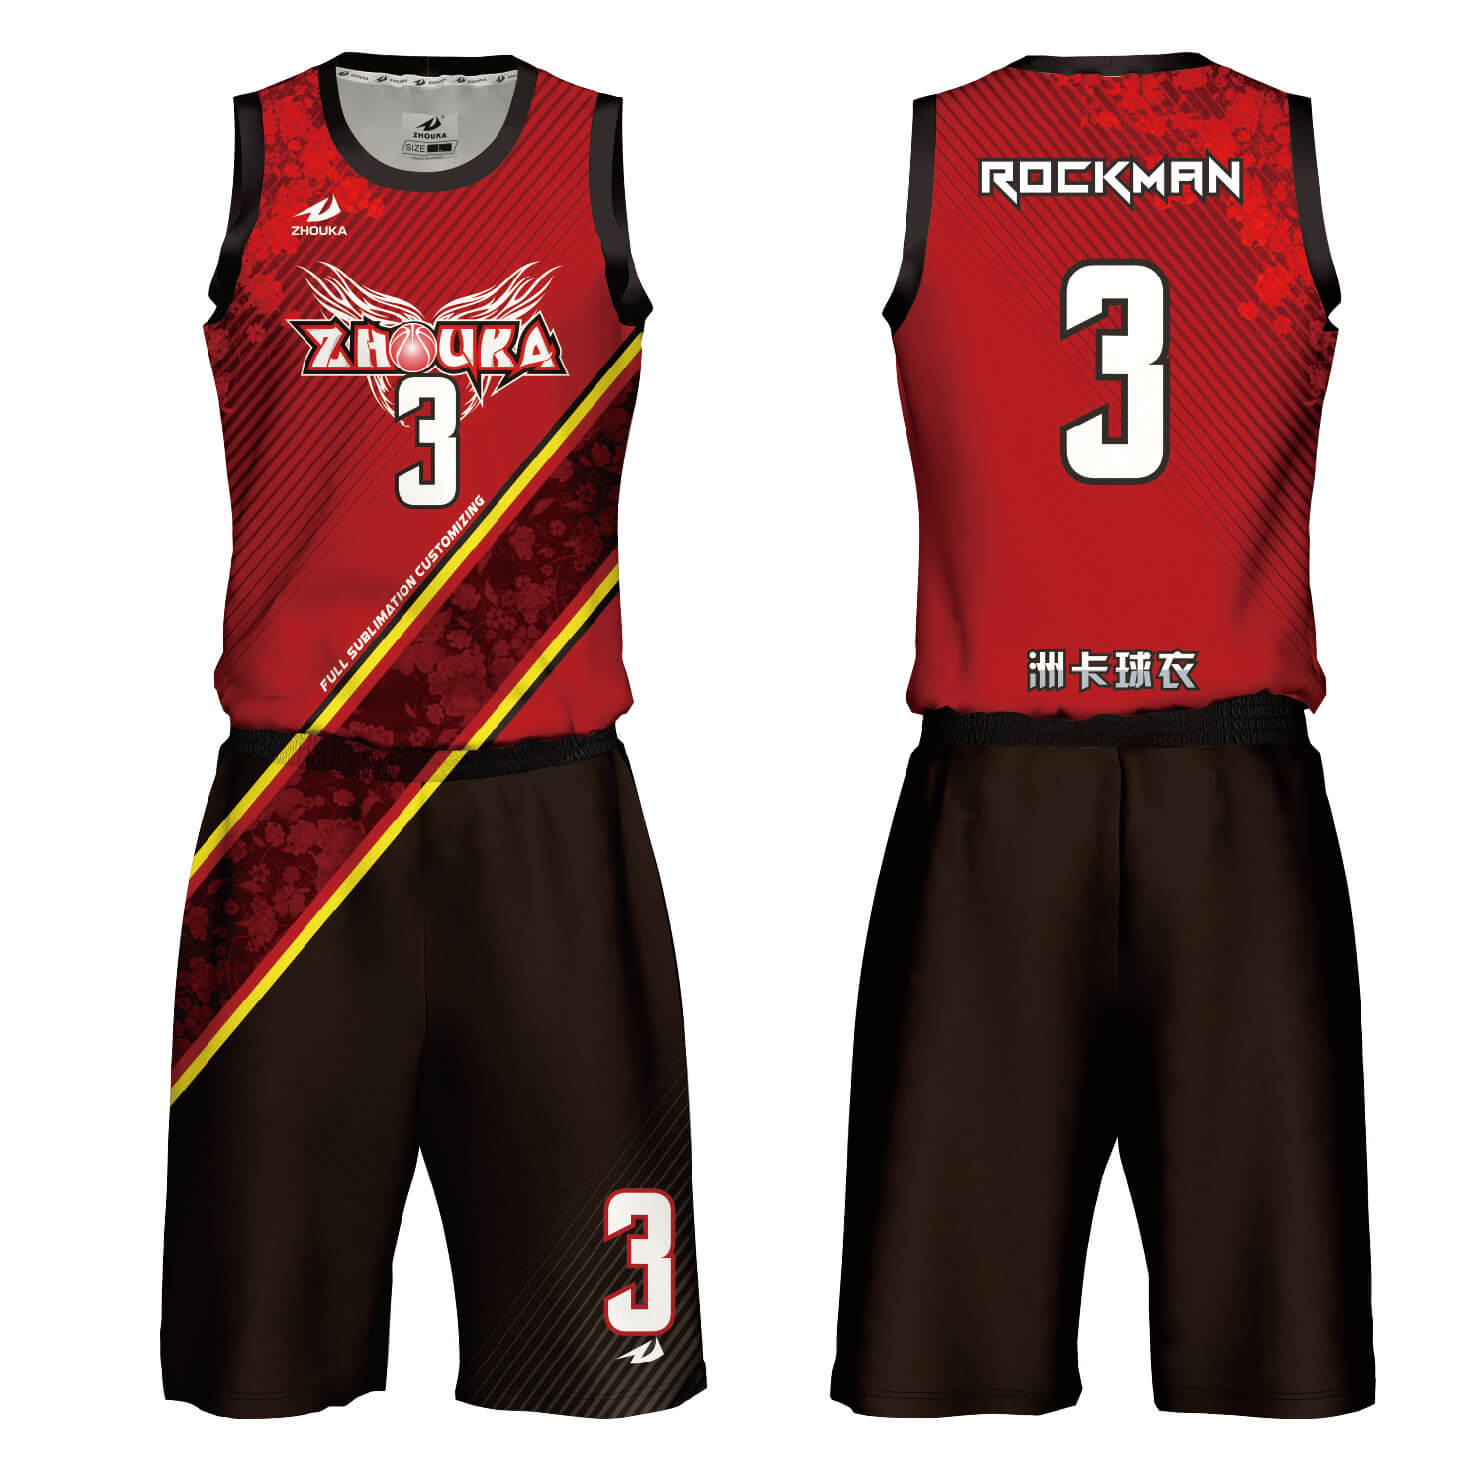 优质的篮球球衣设计篮球队服装篮球球衣设计